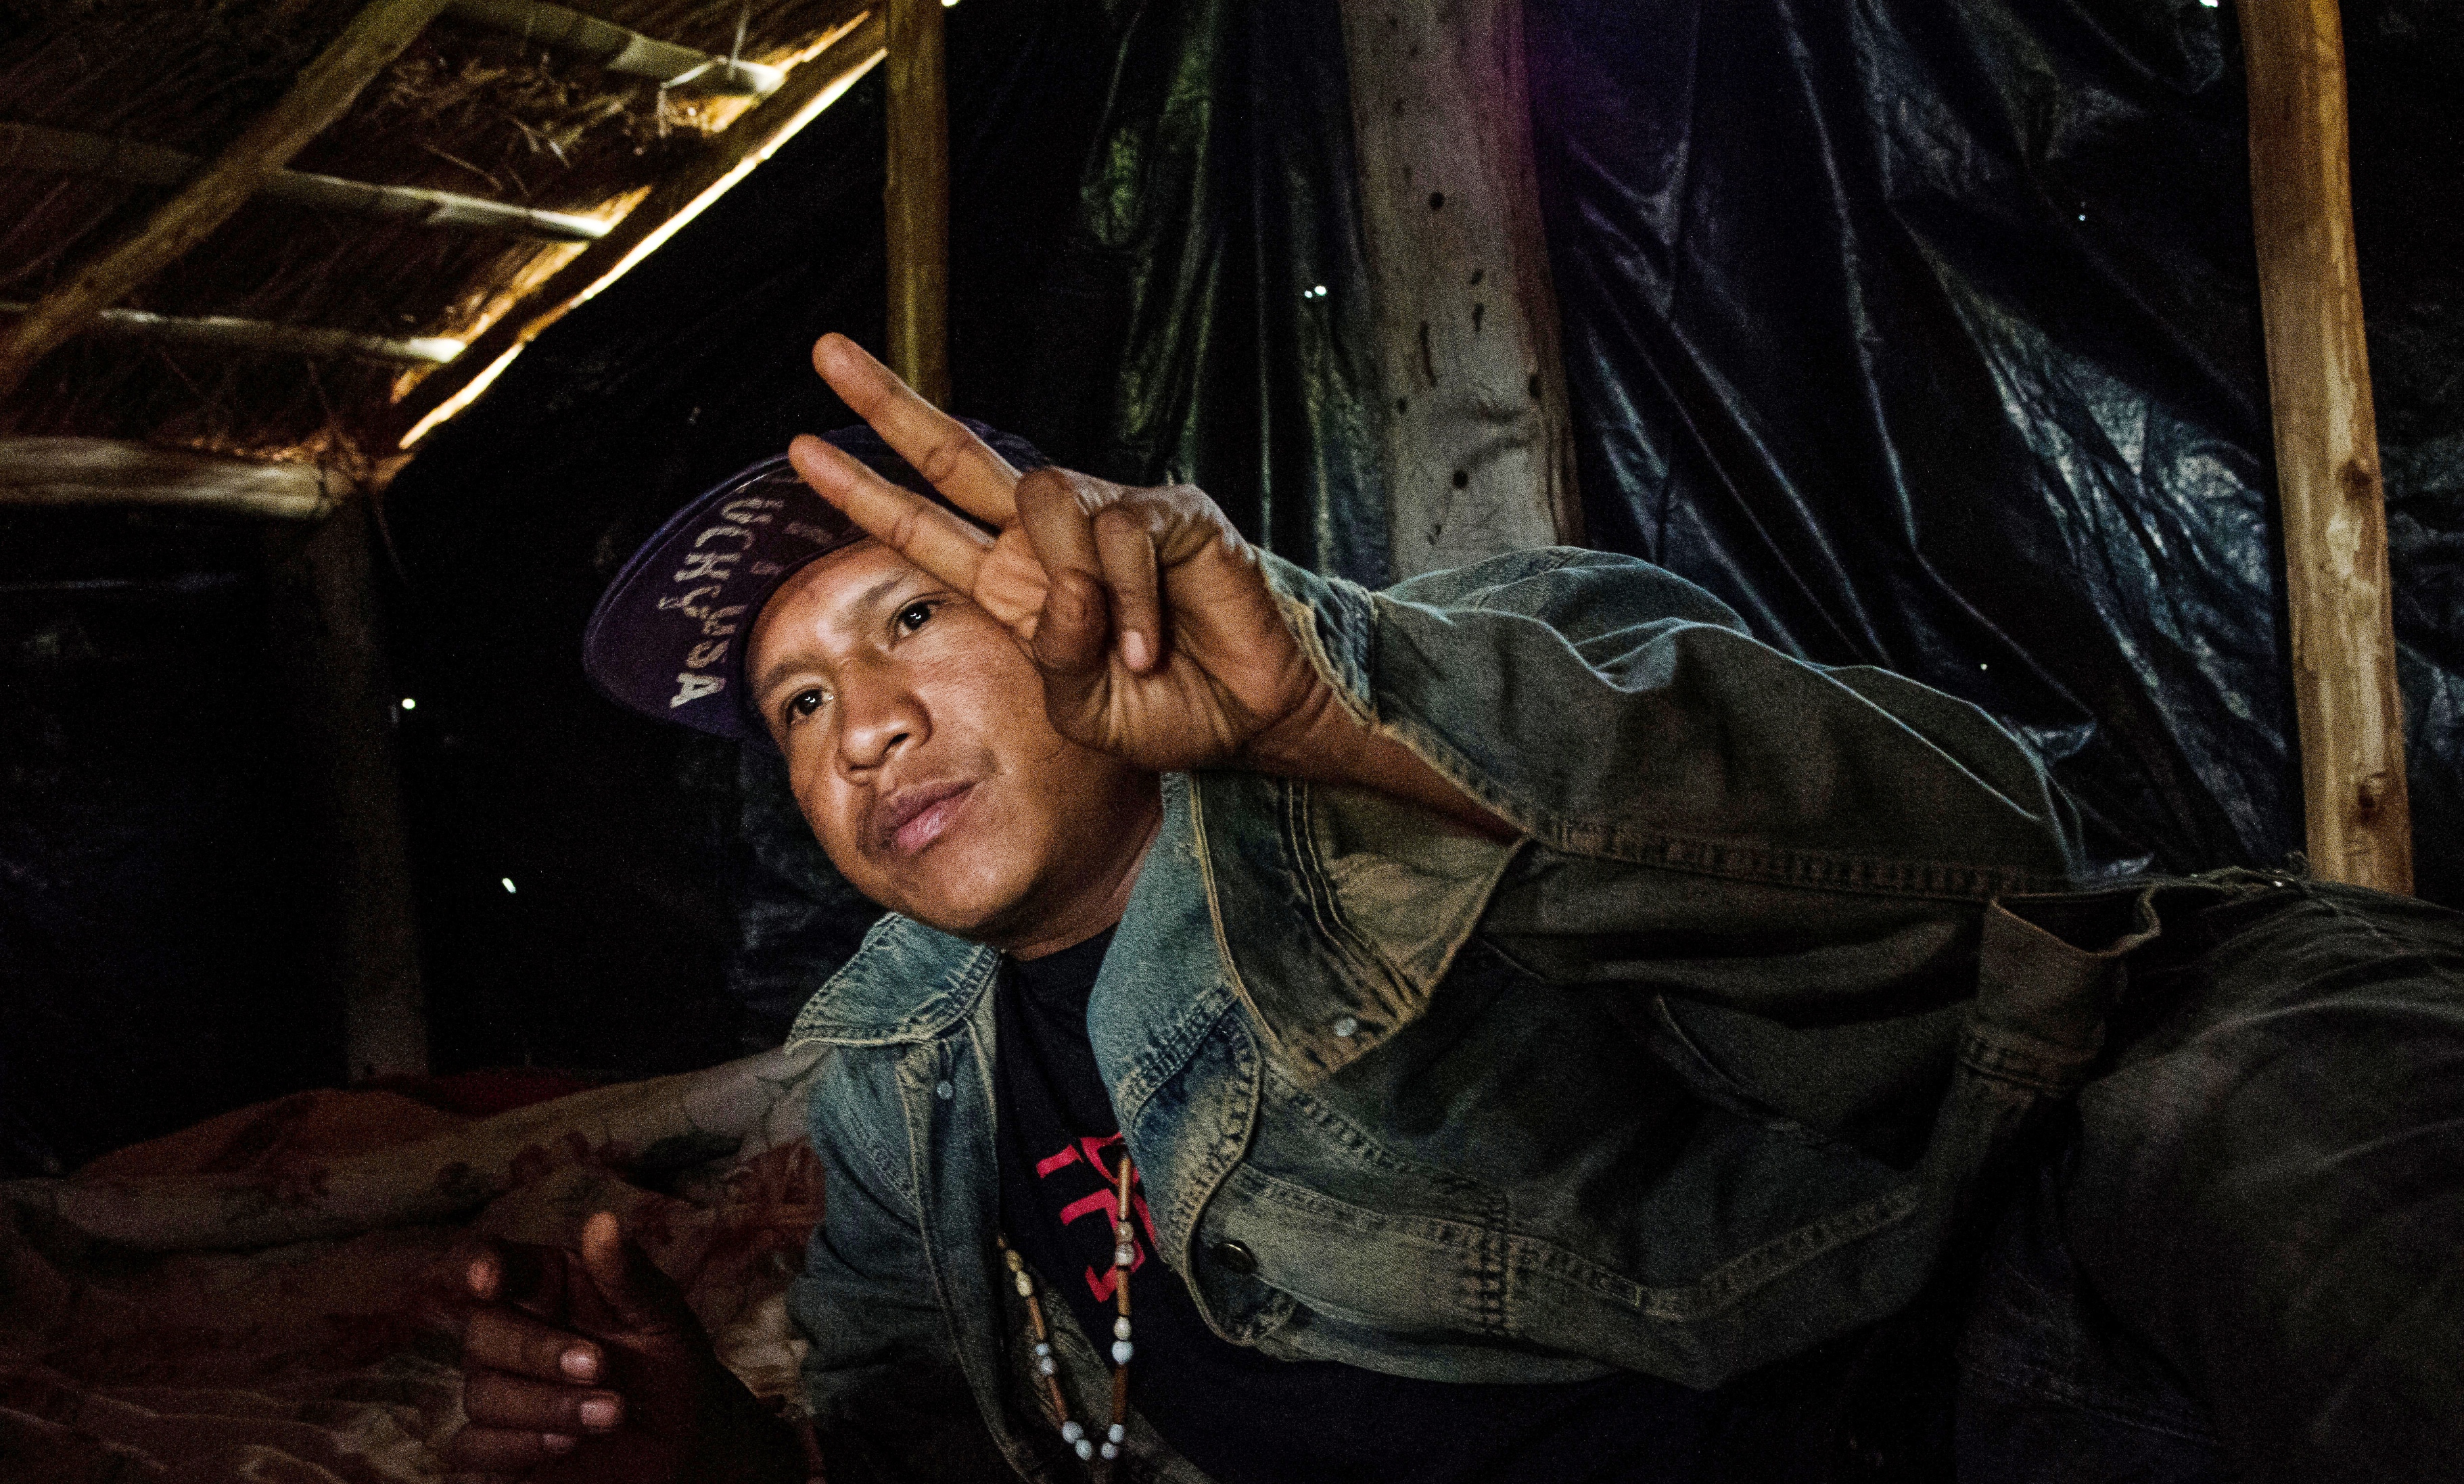 Vinden river i plasten som dekker den lille hytta i jordokkupasjonen Toropaso. Universitets­studenten Elson snakker med lav stemme når han forklarer hvordan volden mot urfolksgruppa Guarani-Kaiowá har eskalert de siste årene.